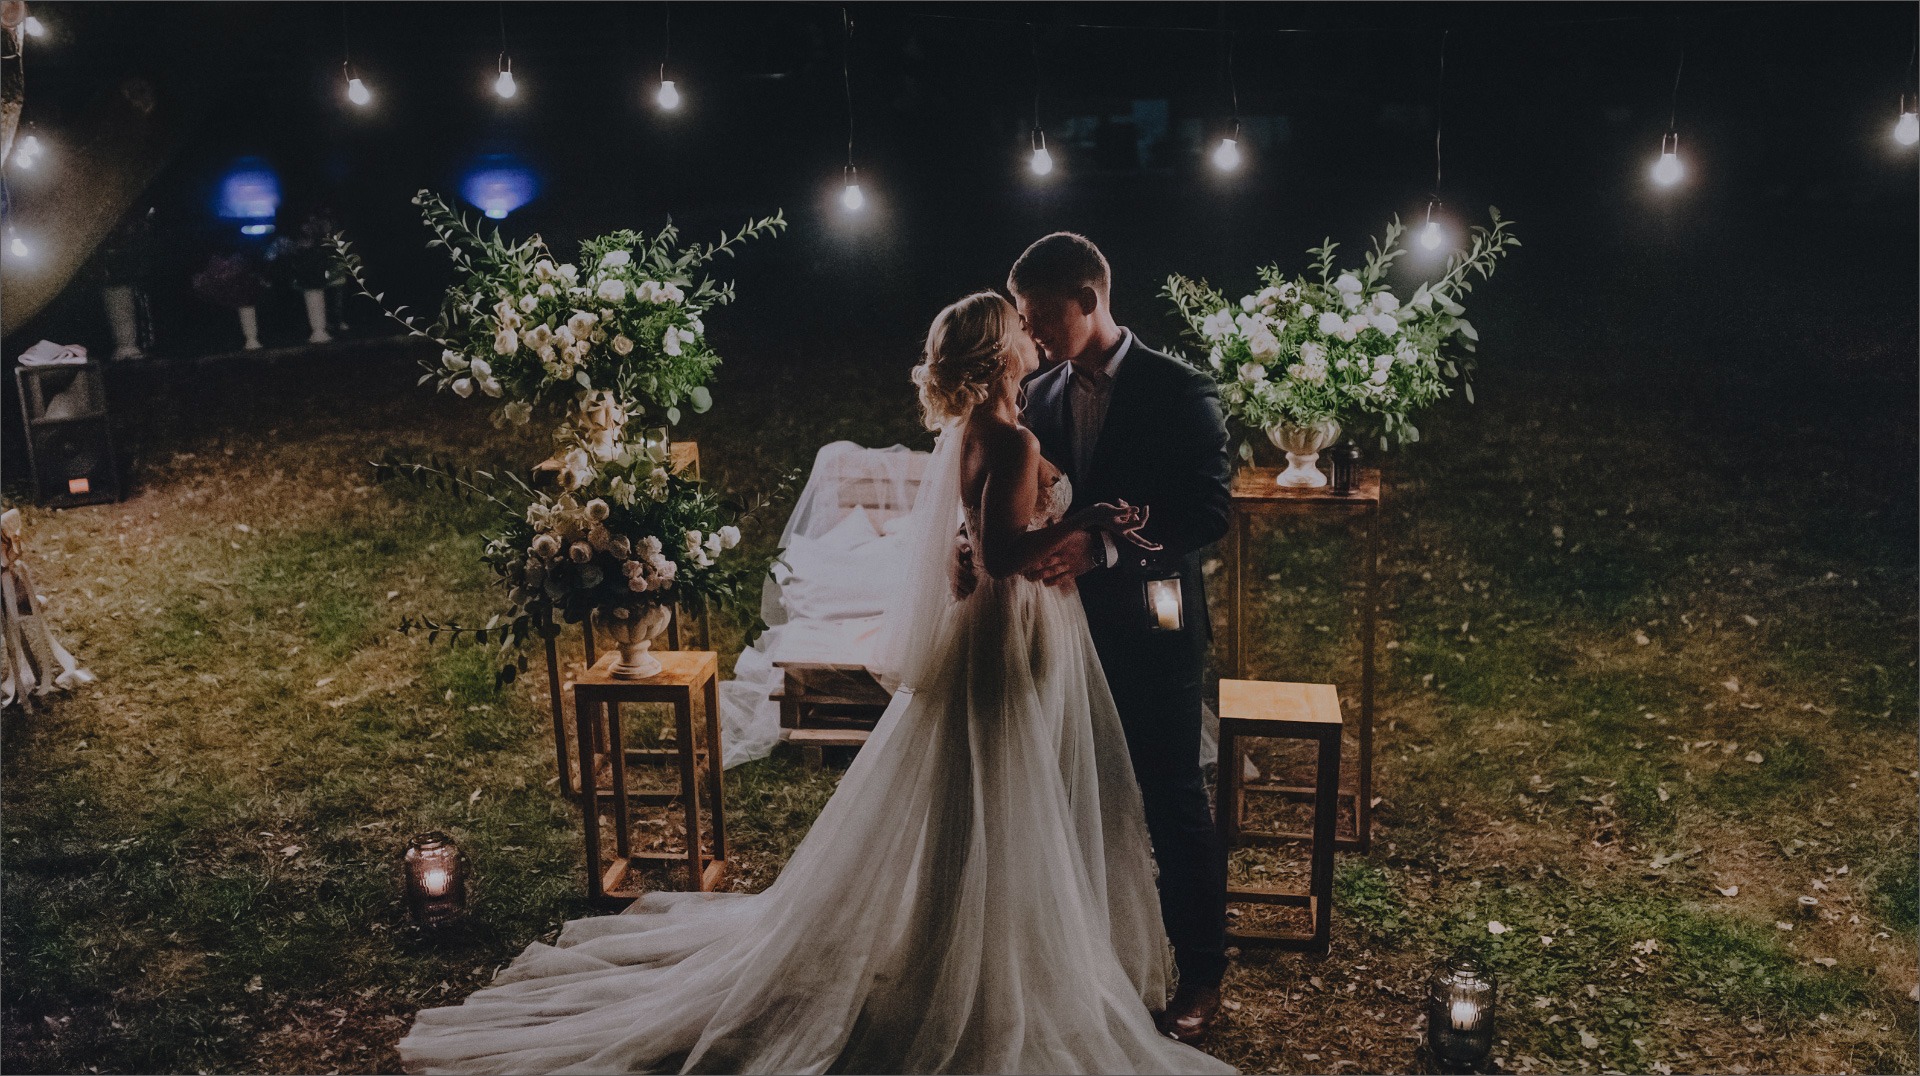 Sposarsi sotto un cielo stellato: la magia del matrimonio all’aria aperta